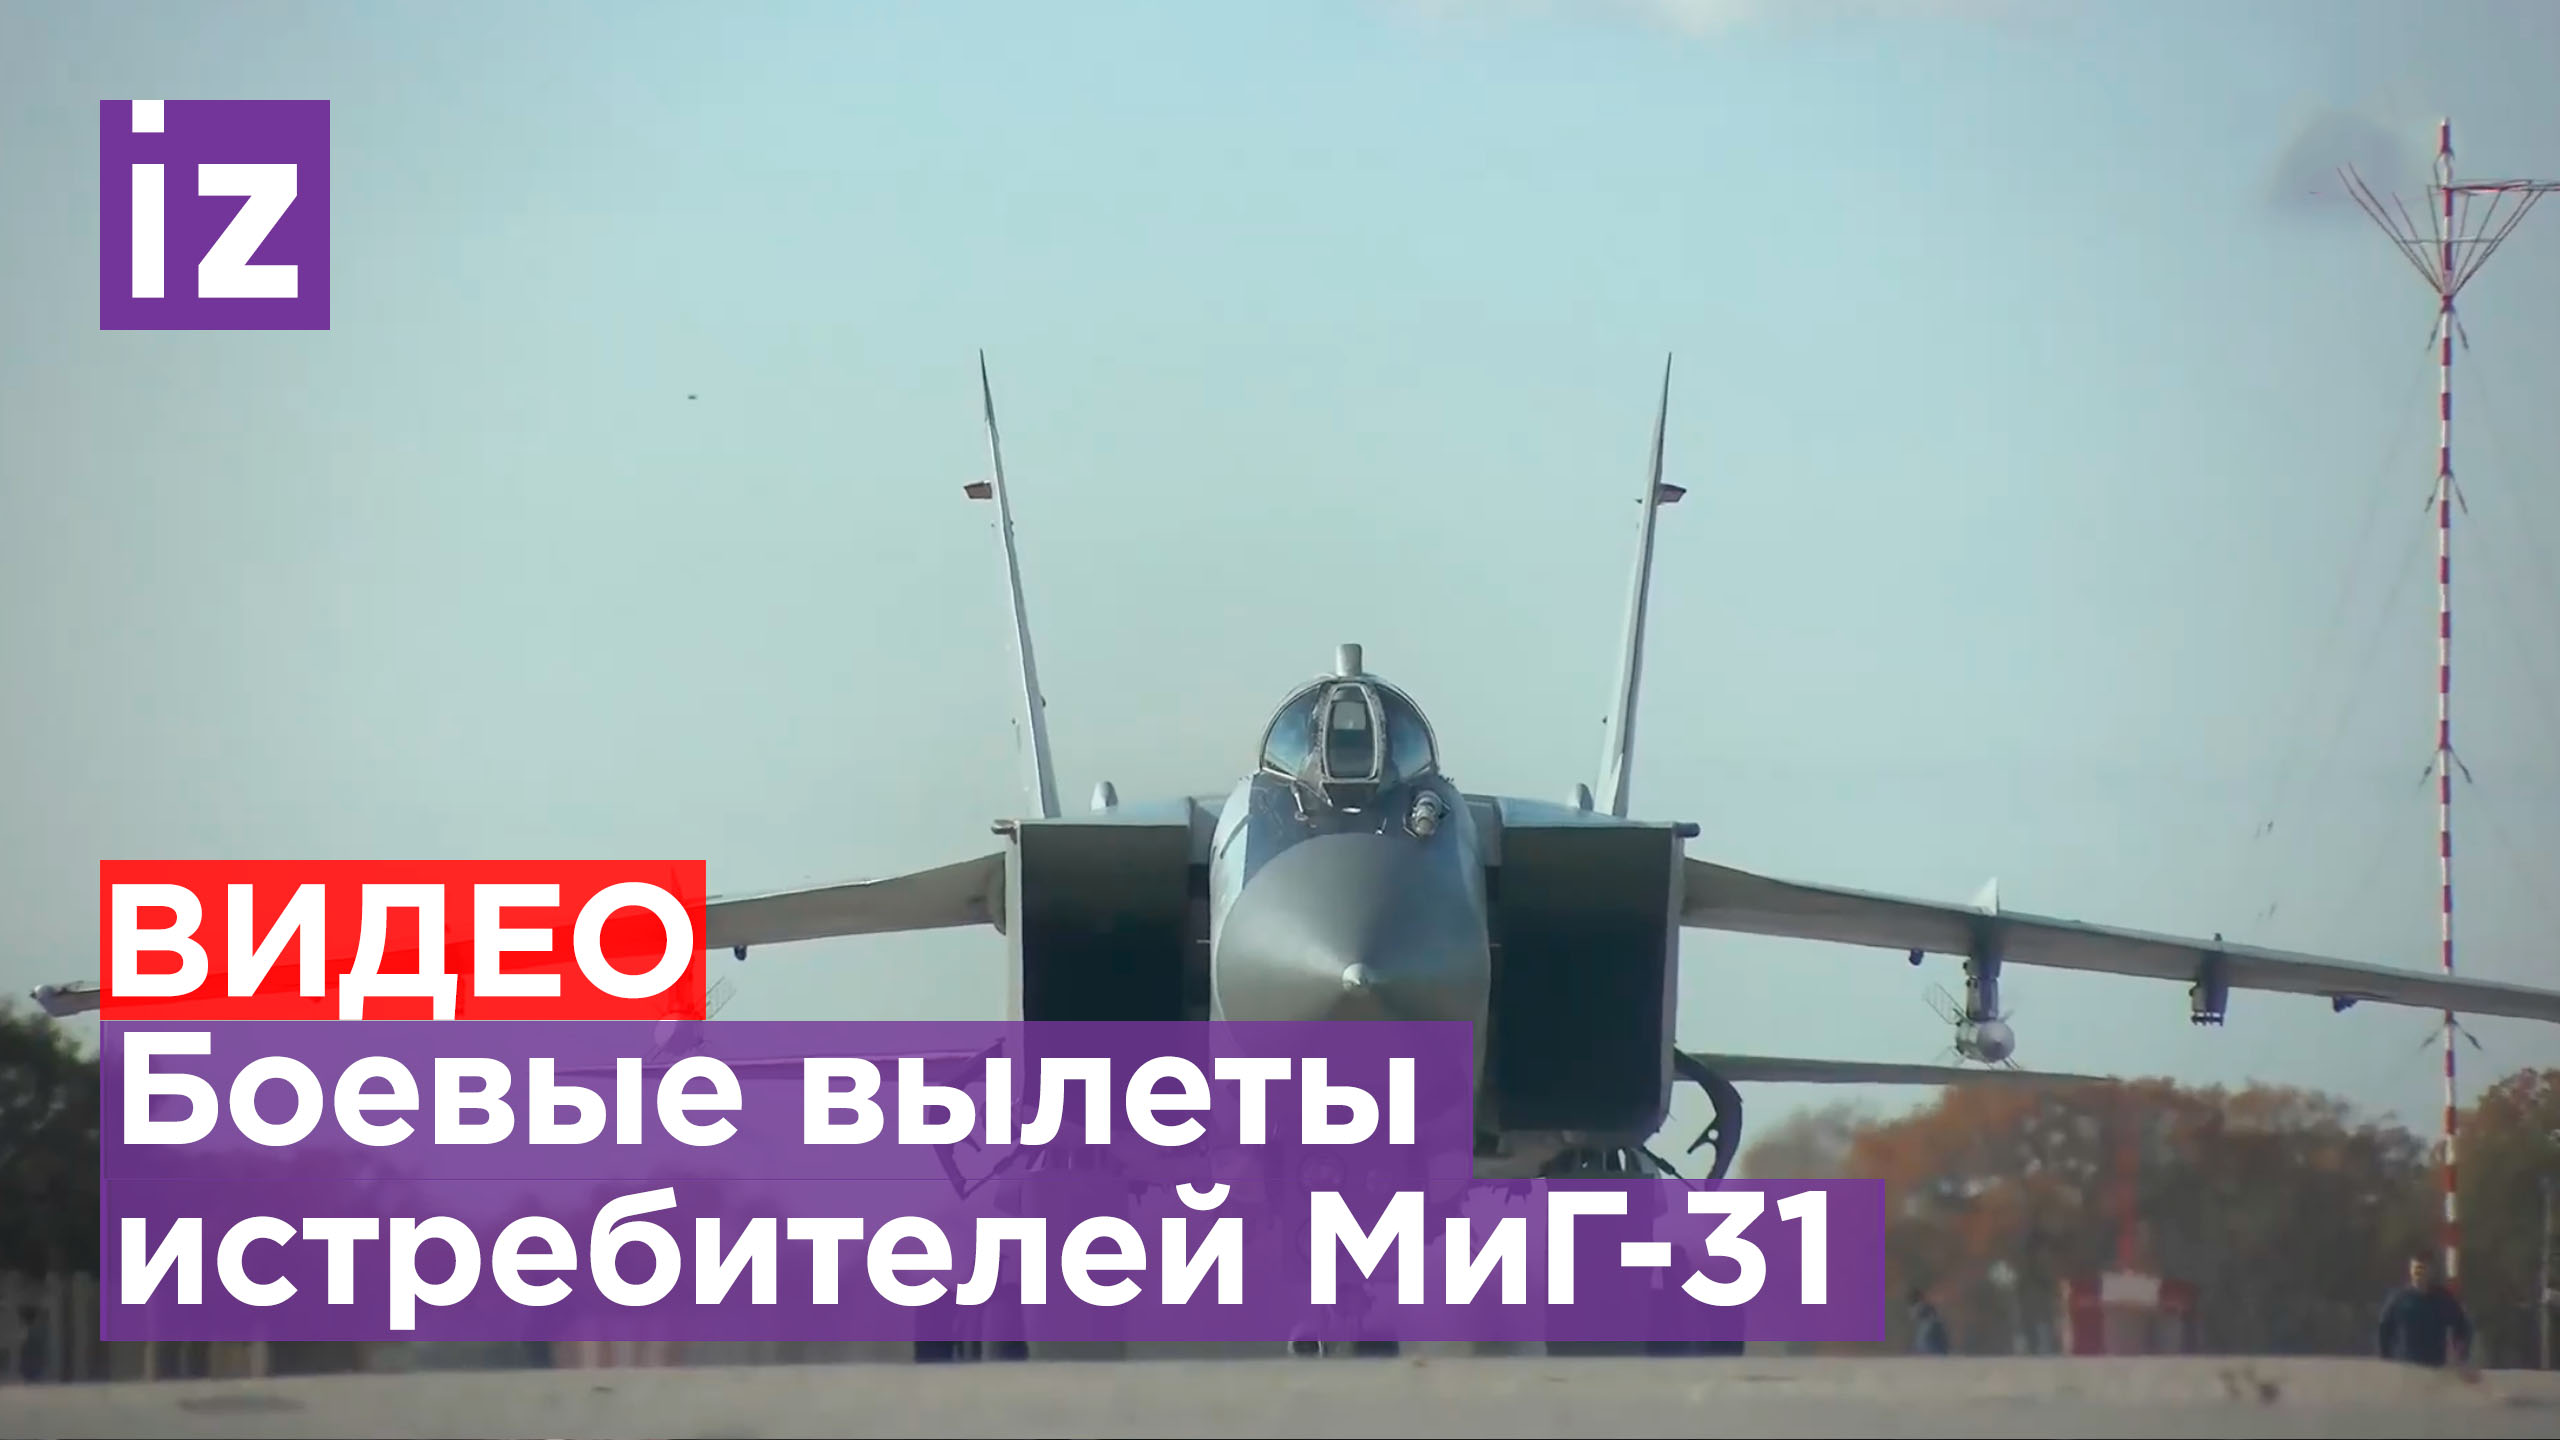 Истребители МиГ-31 очищают небо в зоне спецоперации - видео МО РФ / Известия